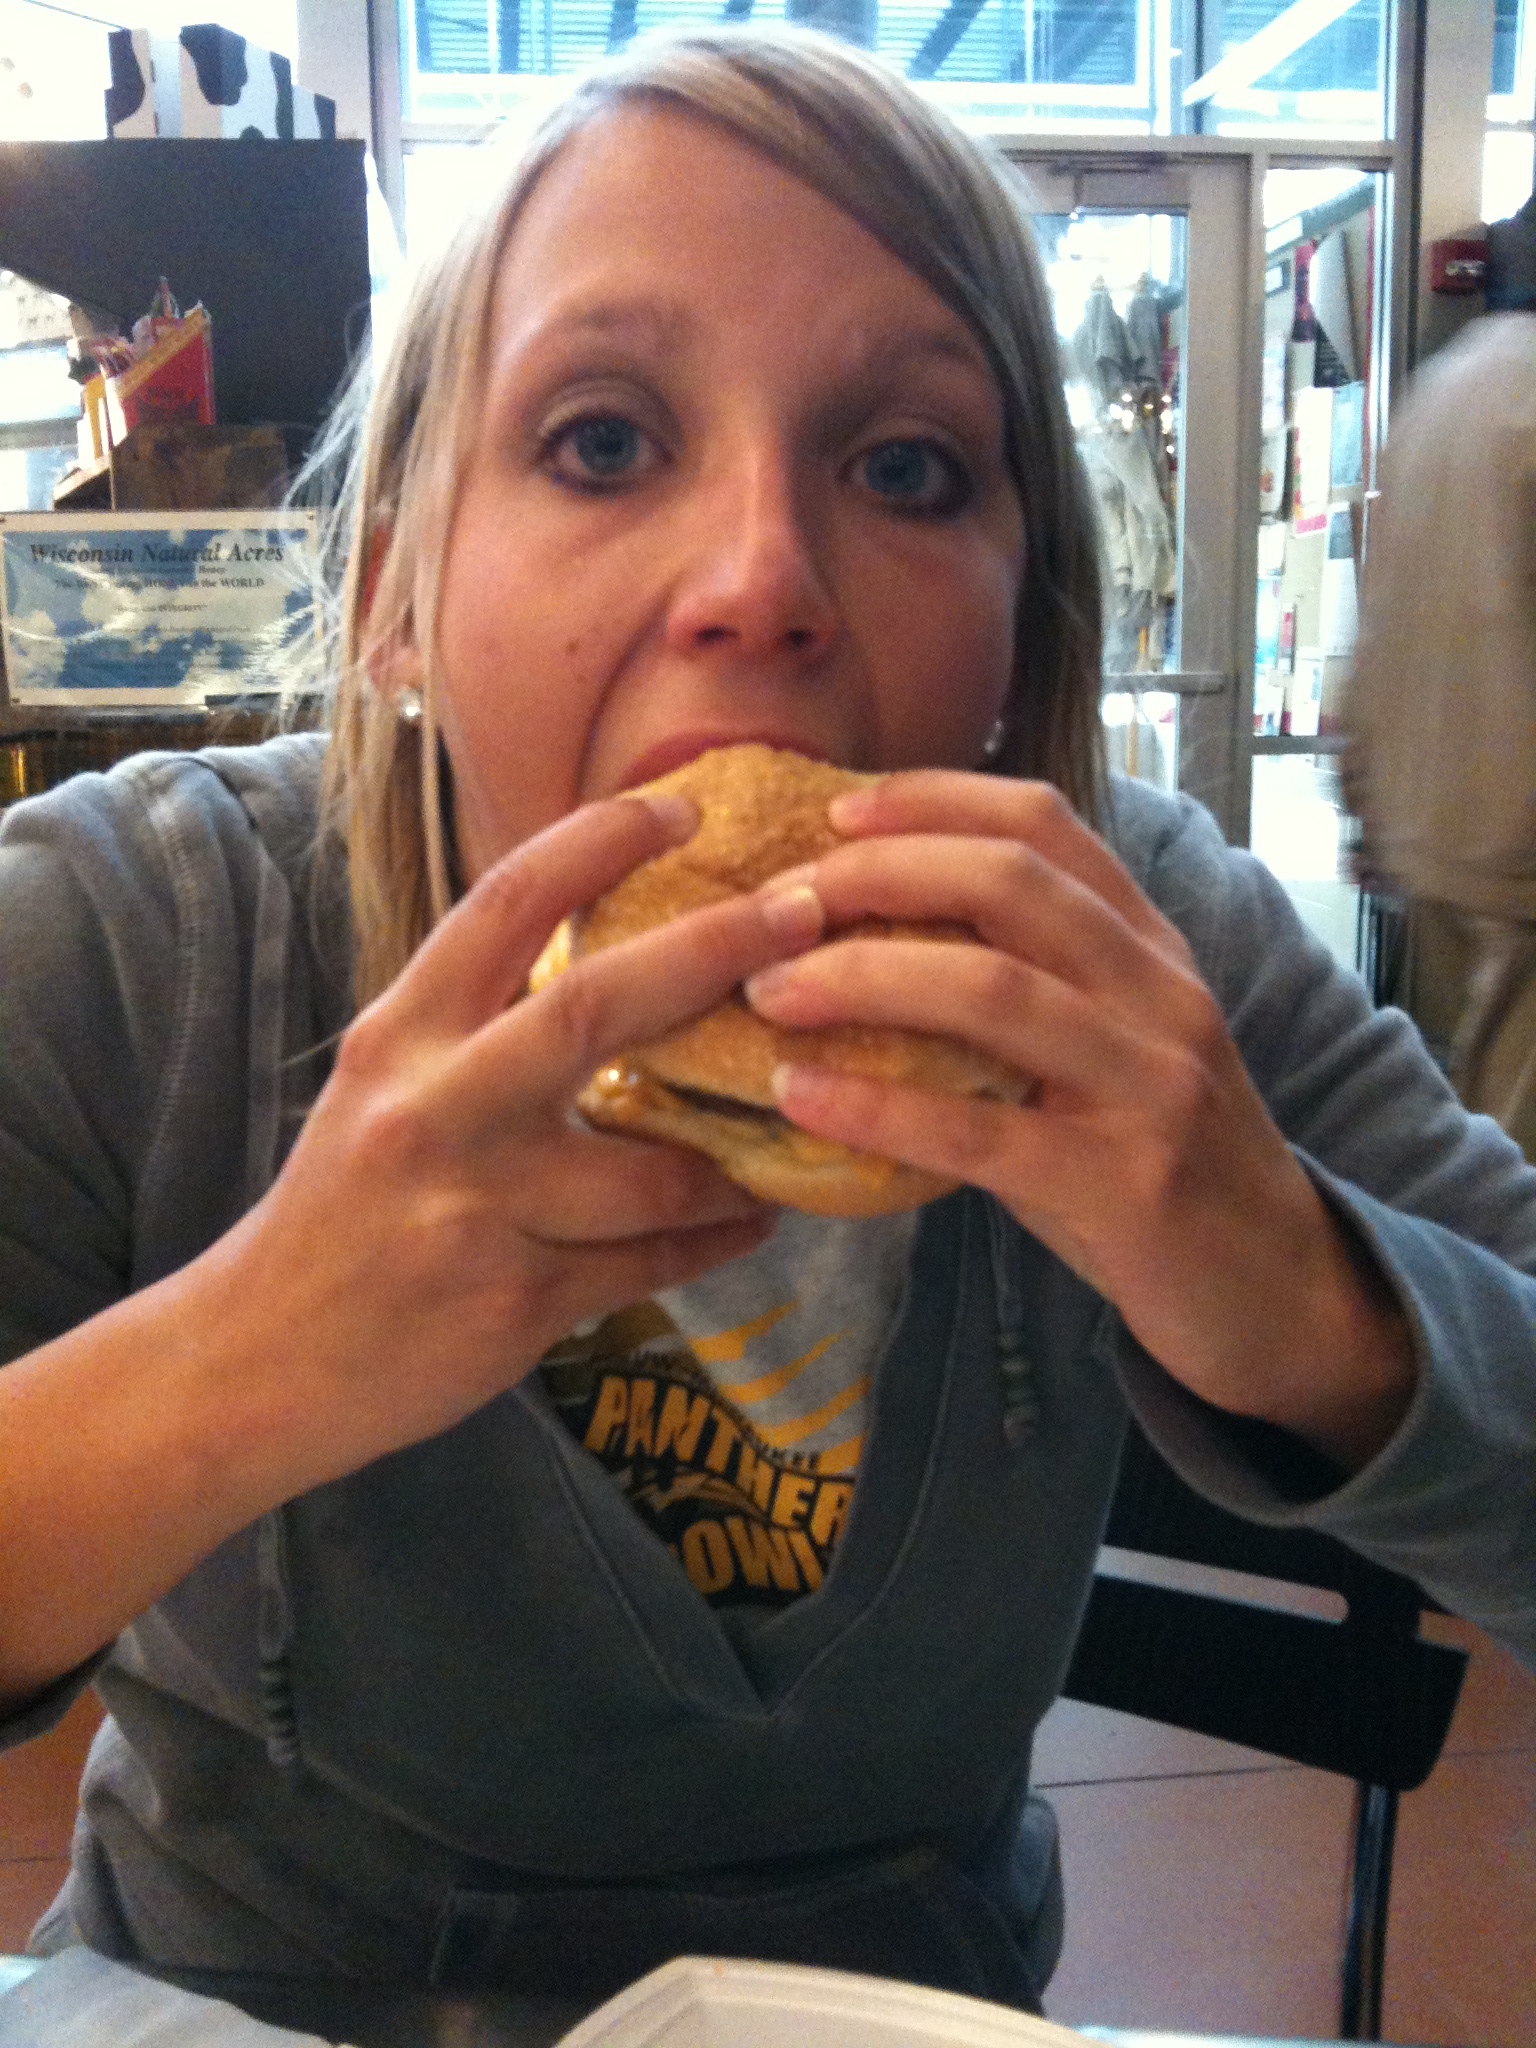 a woman takes a bite out of a sandwich